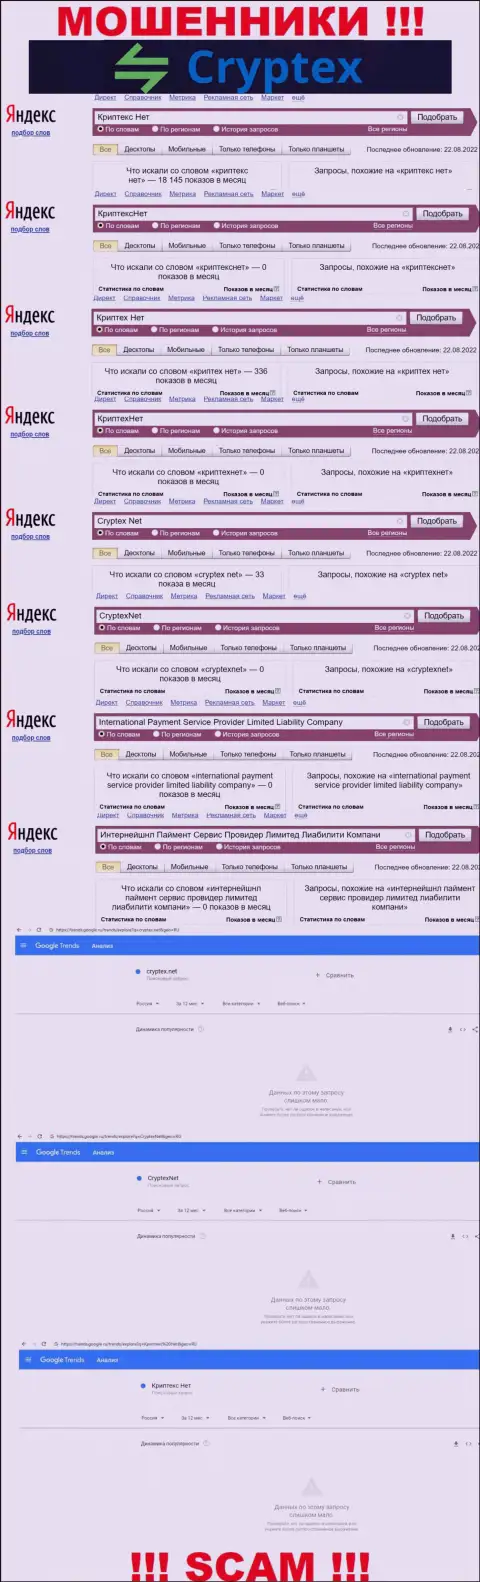 Скрин статистики online-запросов по жульнической конторе КриптексНет